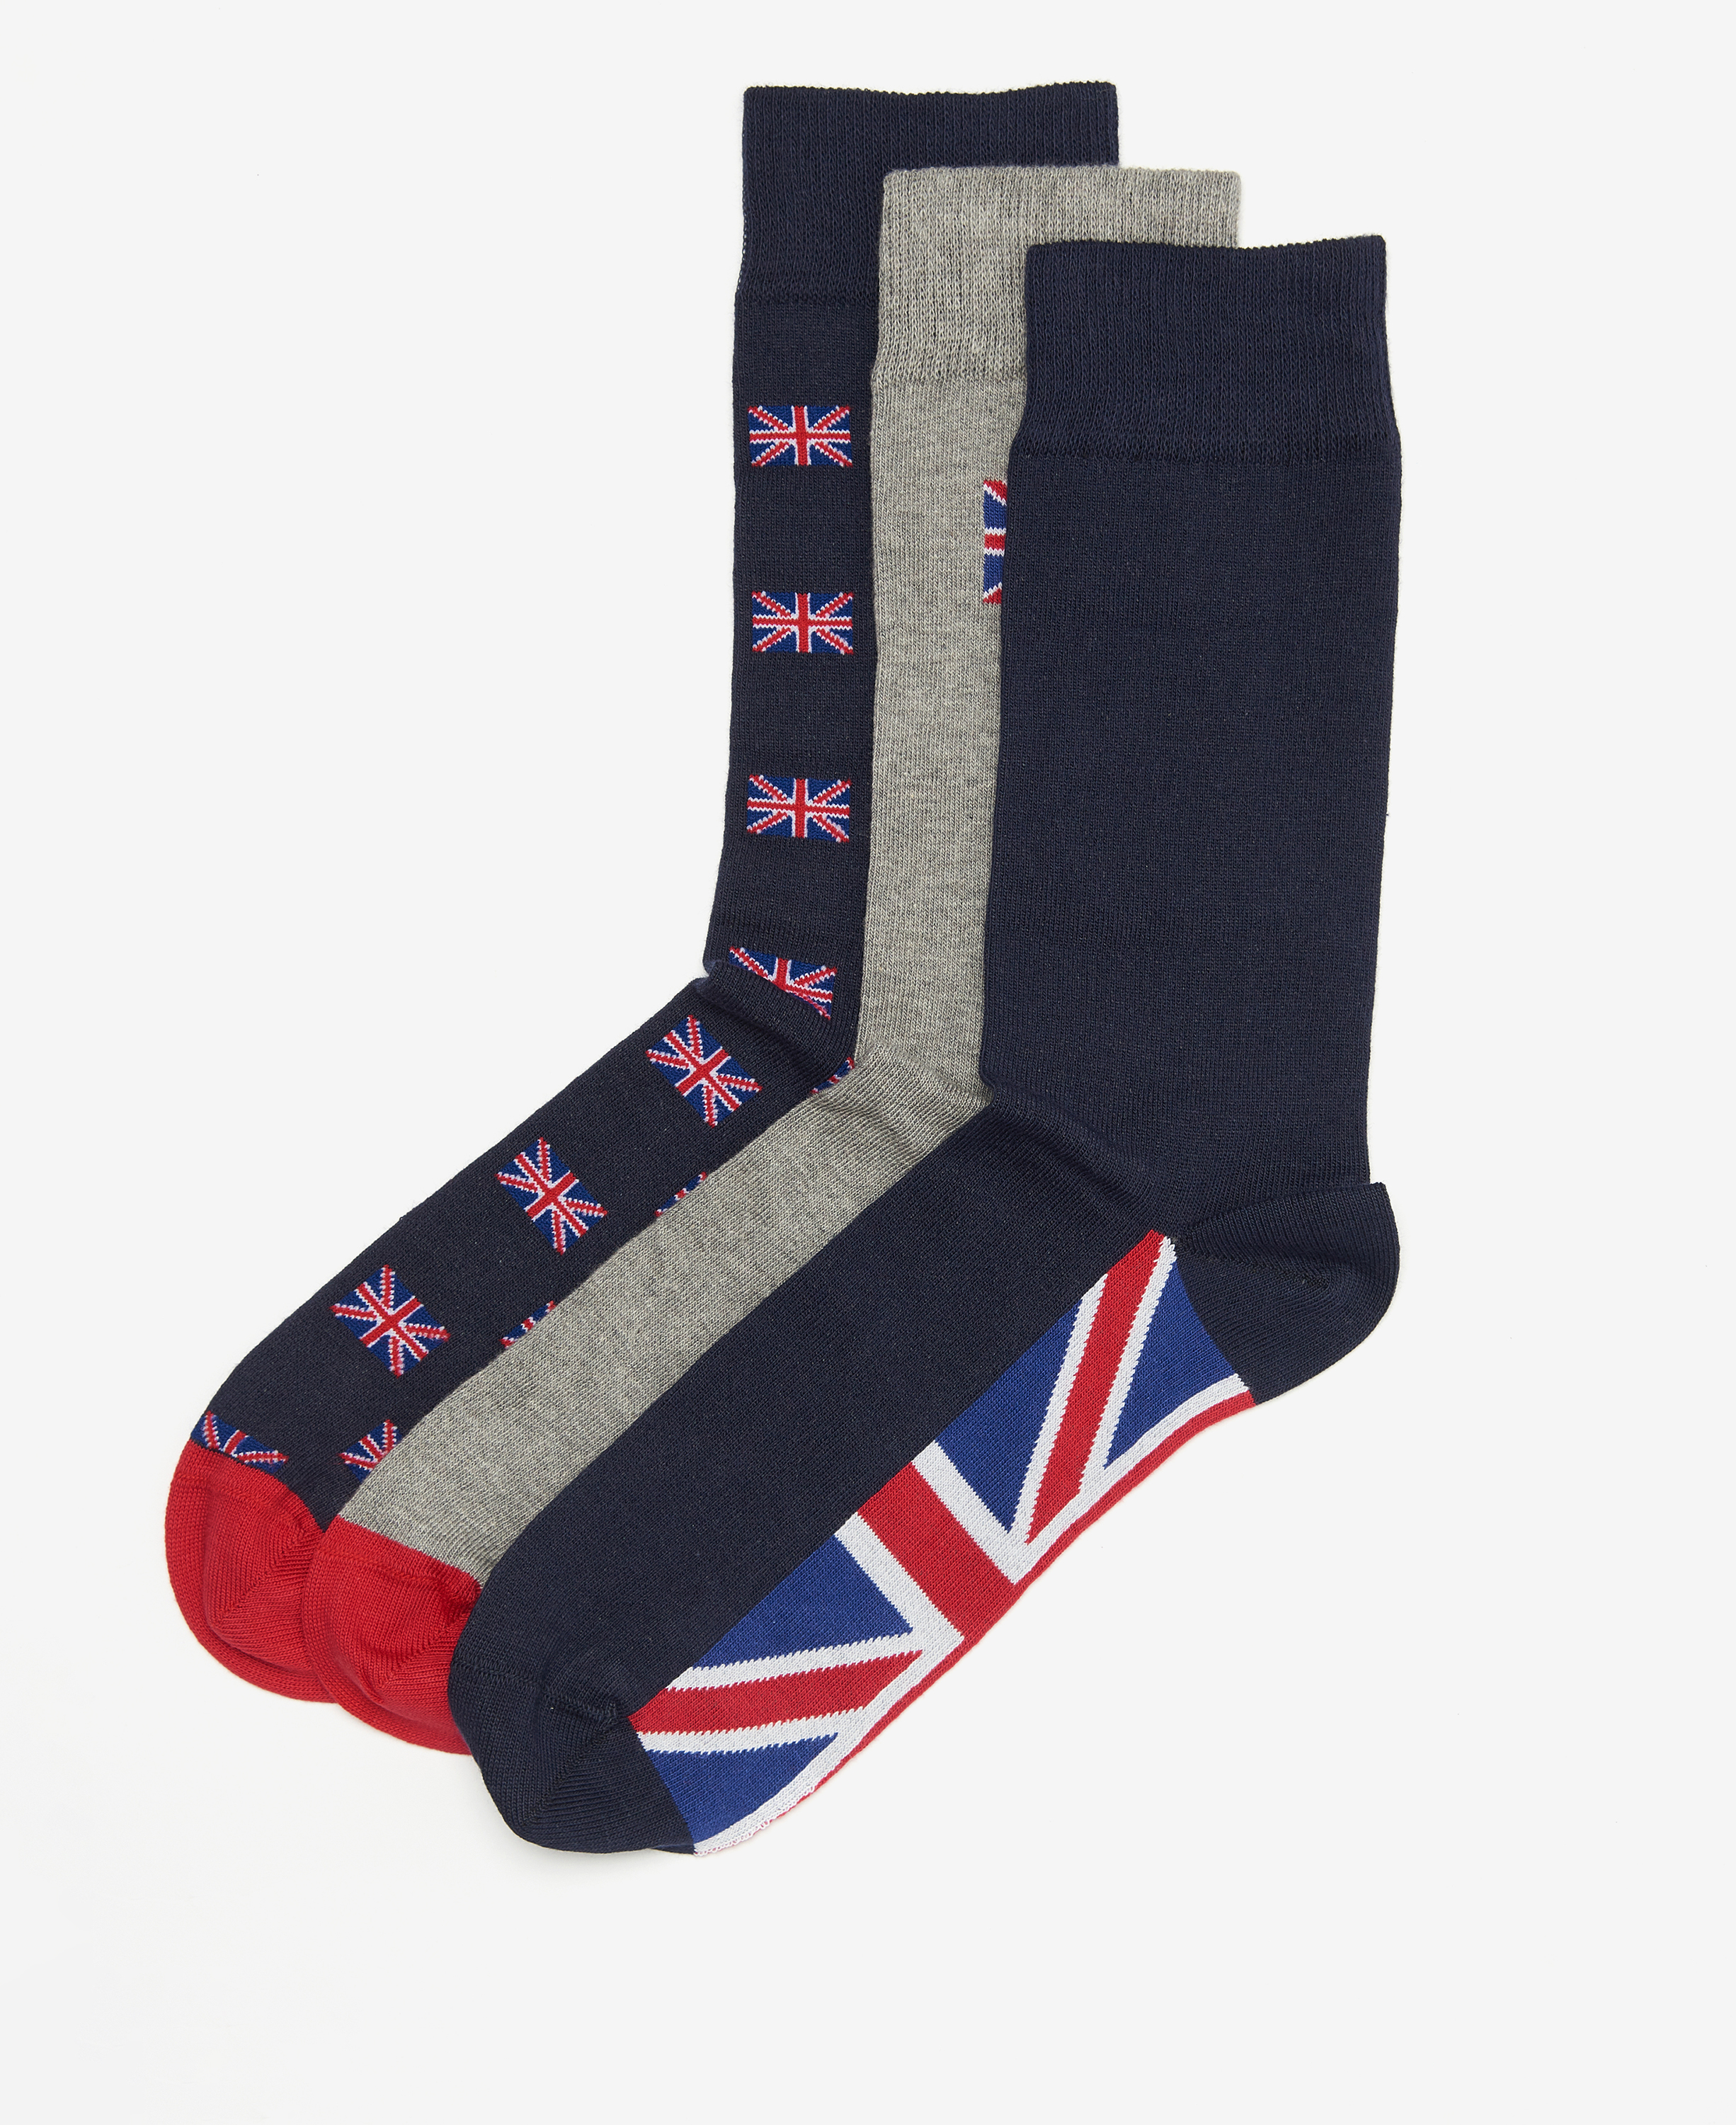 Union Jack Sock Gift